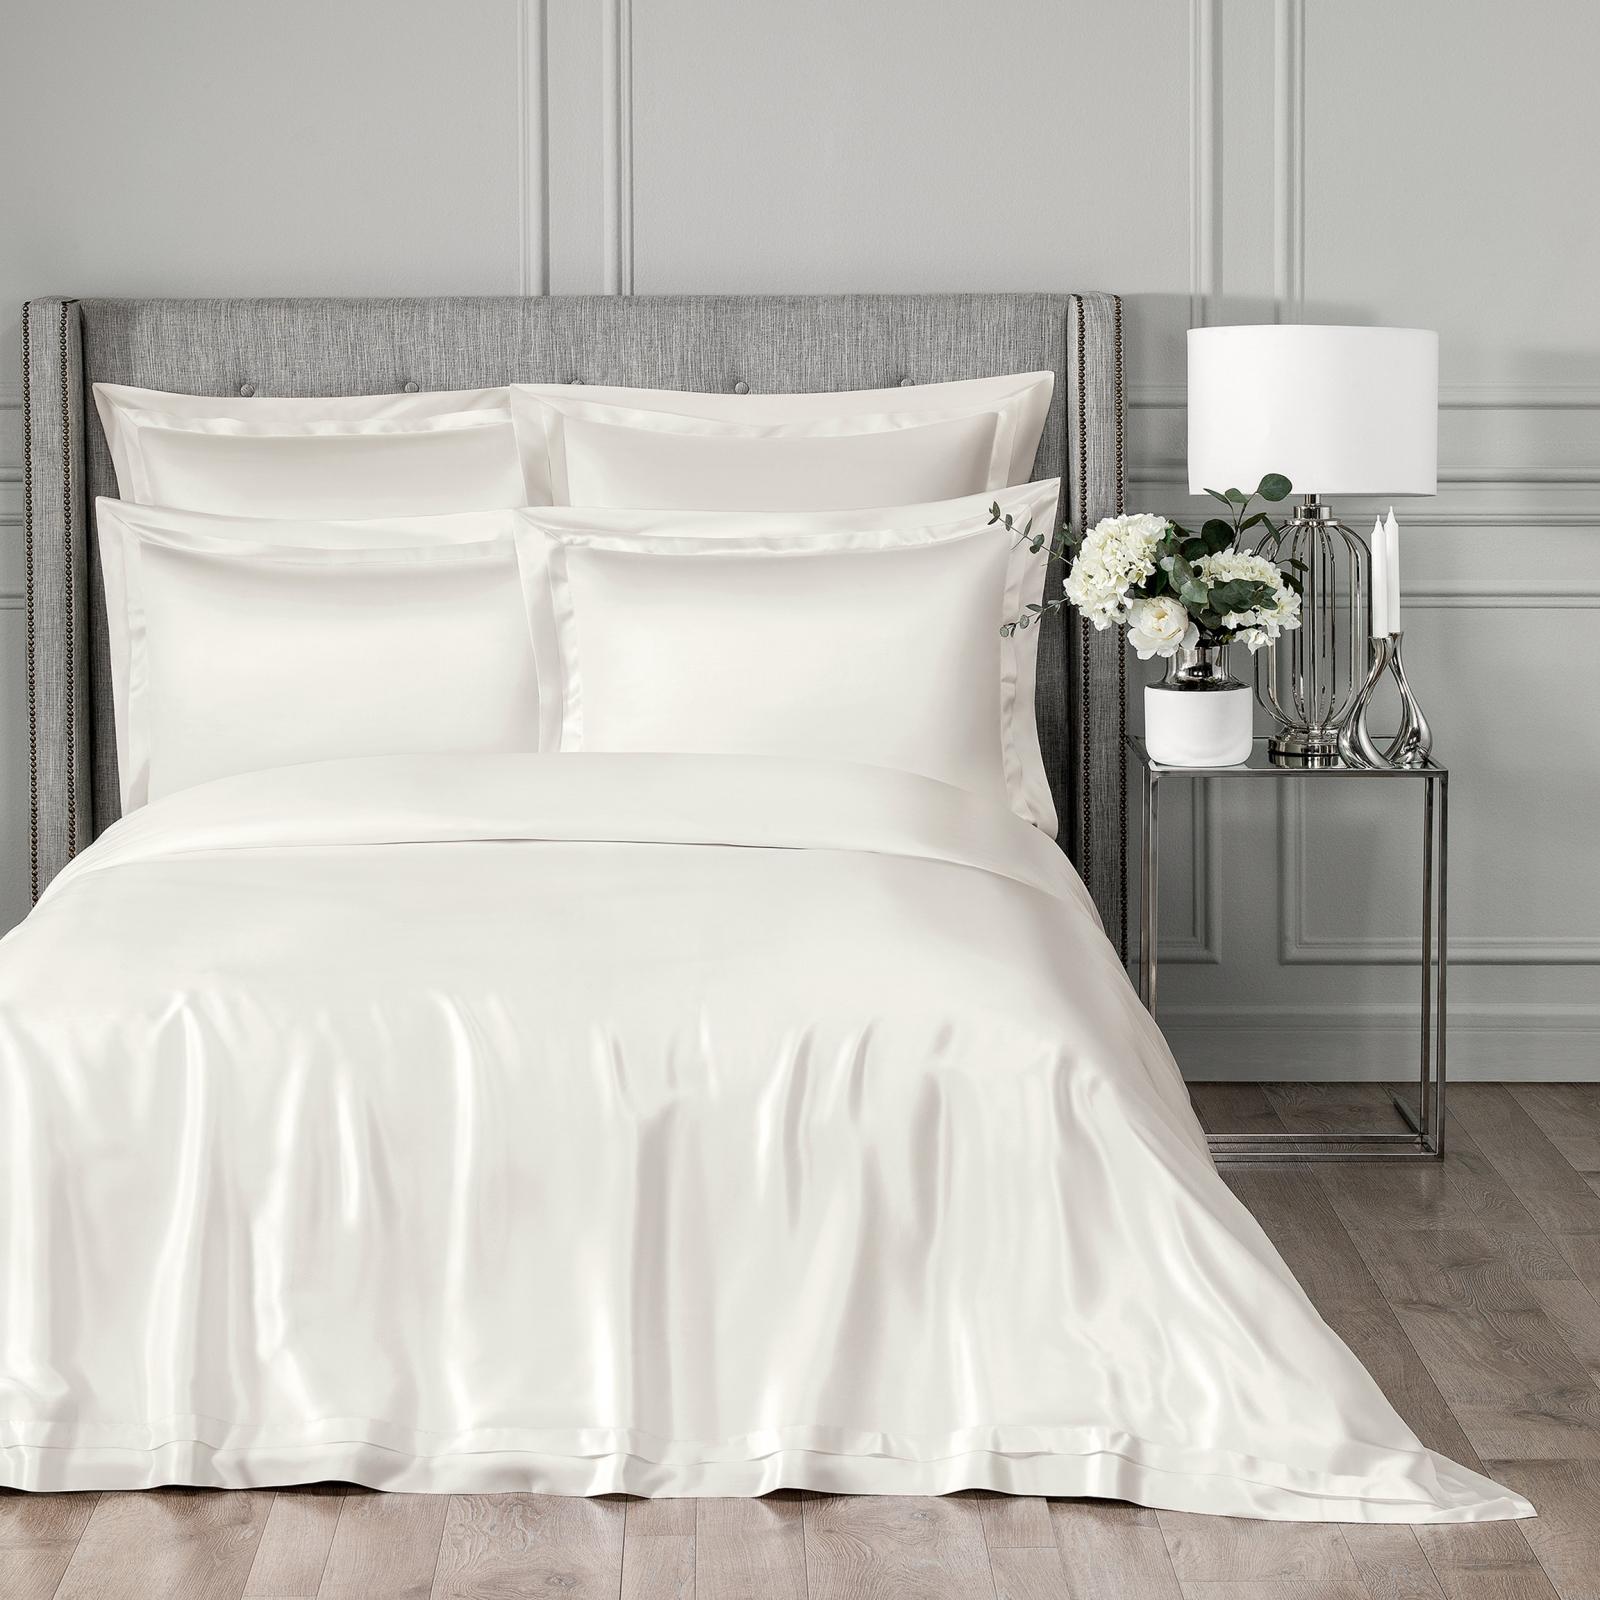 Постельный комплект Togas Элит белый двуспальный евро постельный комплект matteo bosio двуспальный